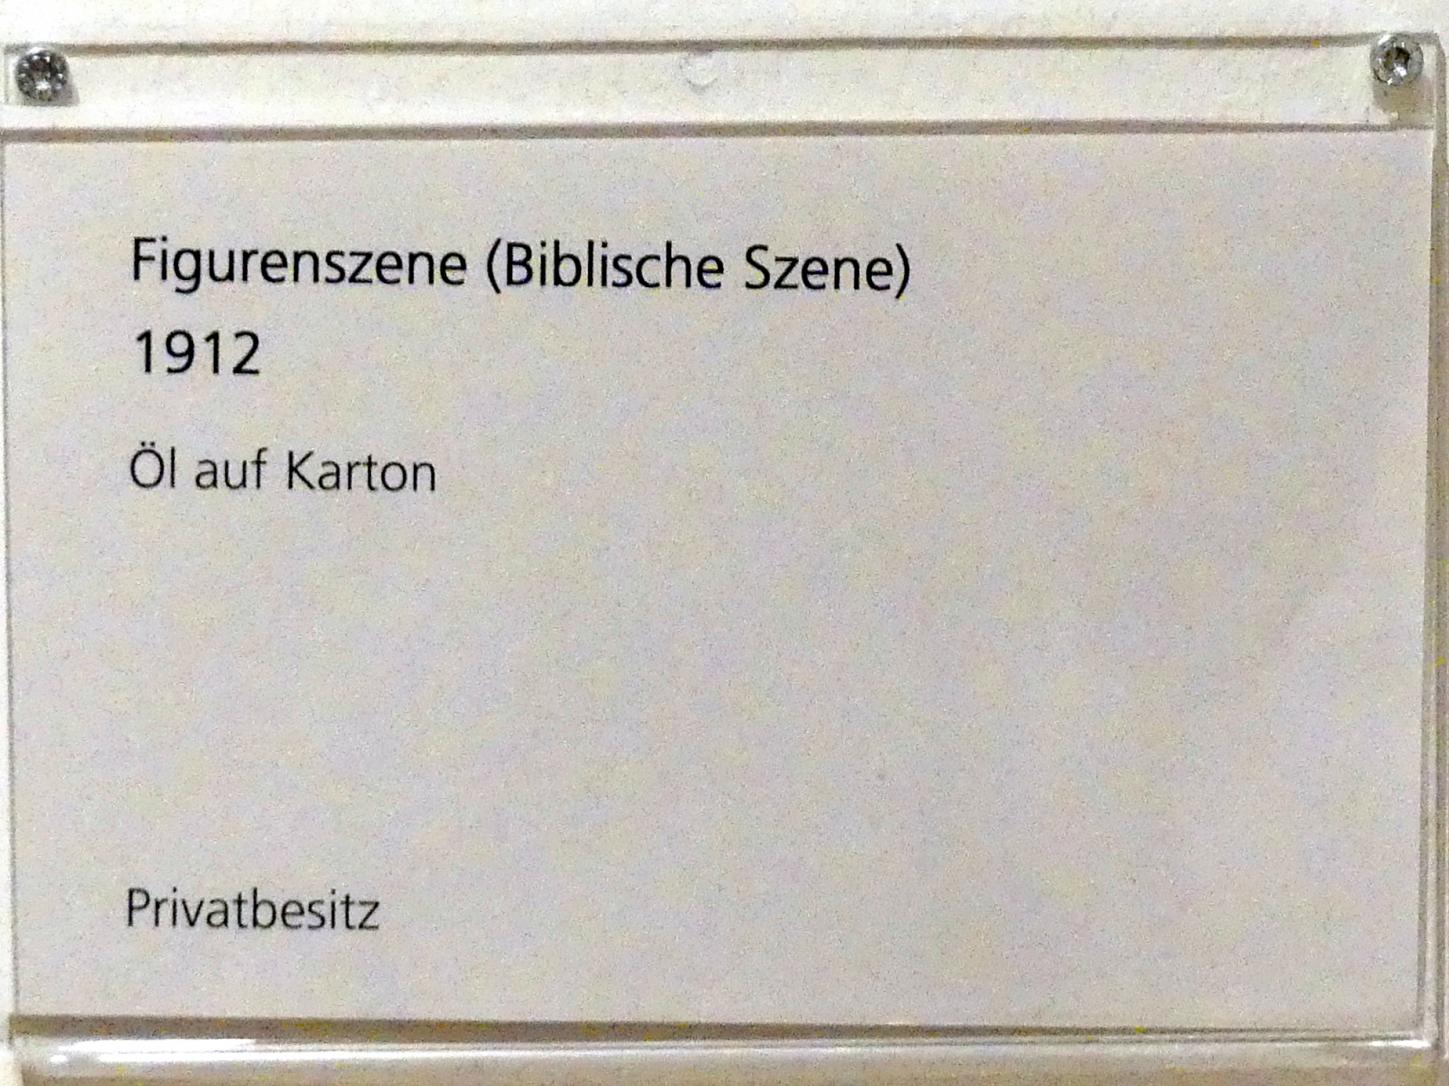 Adolf Hölzel (1880–1933), Figurenszene (Biblische Szene), Schweinfurt, Museum Georg Schäfer, Ausstellung Adolf Hölzel vom 03.02.-01.05.2019, Saal 1, 1912, Bild 2/2